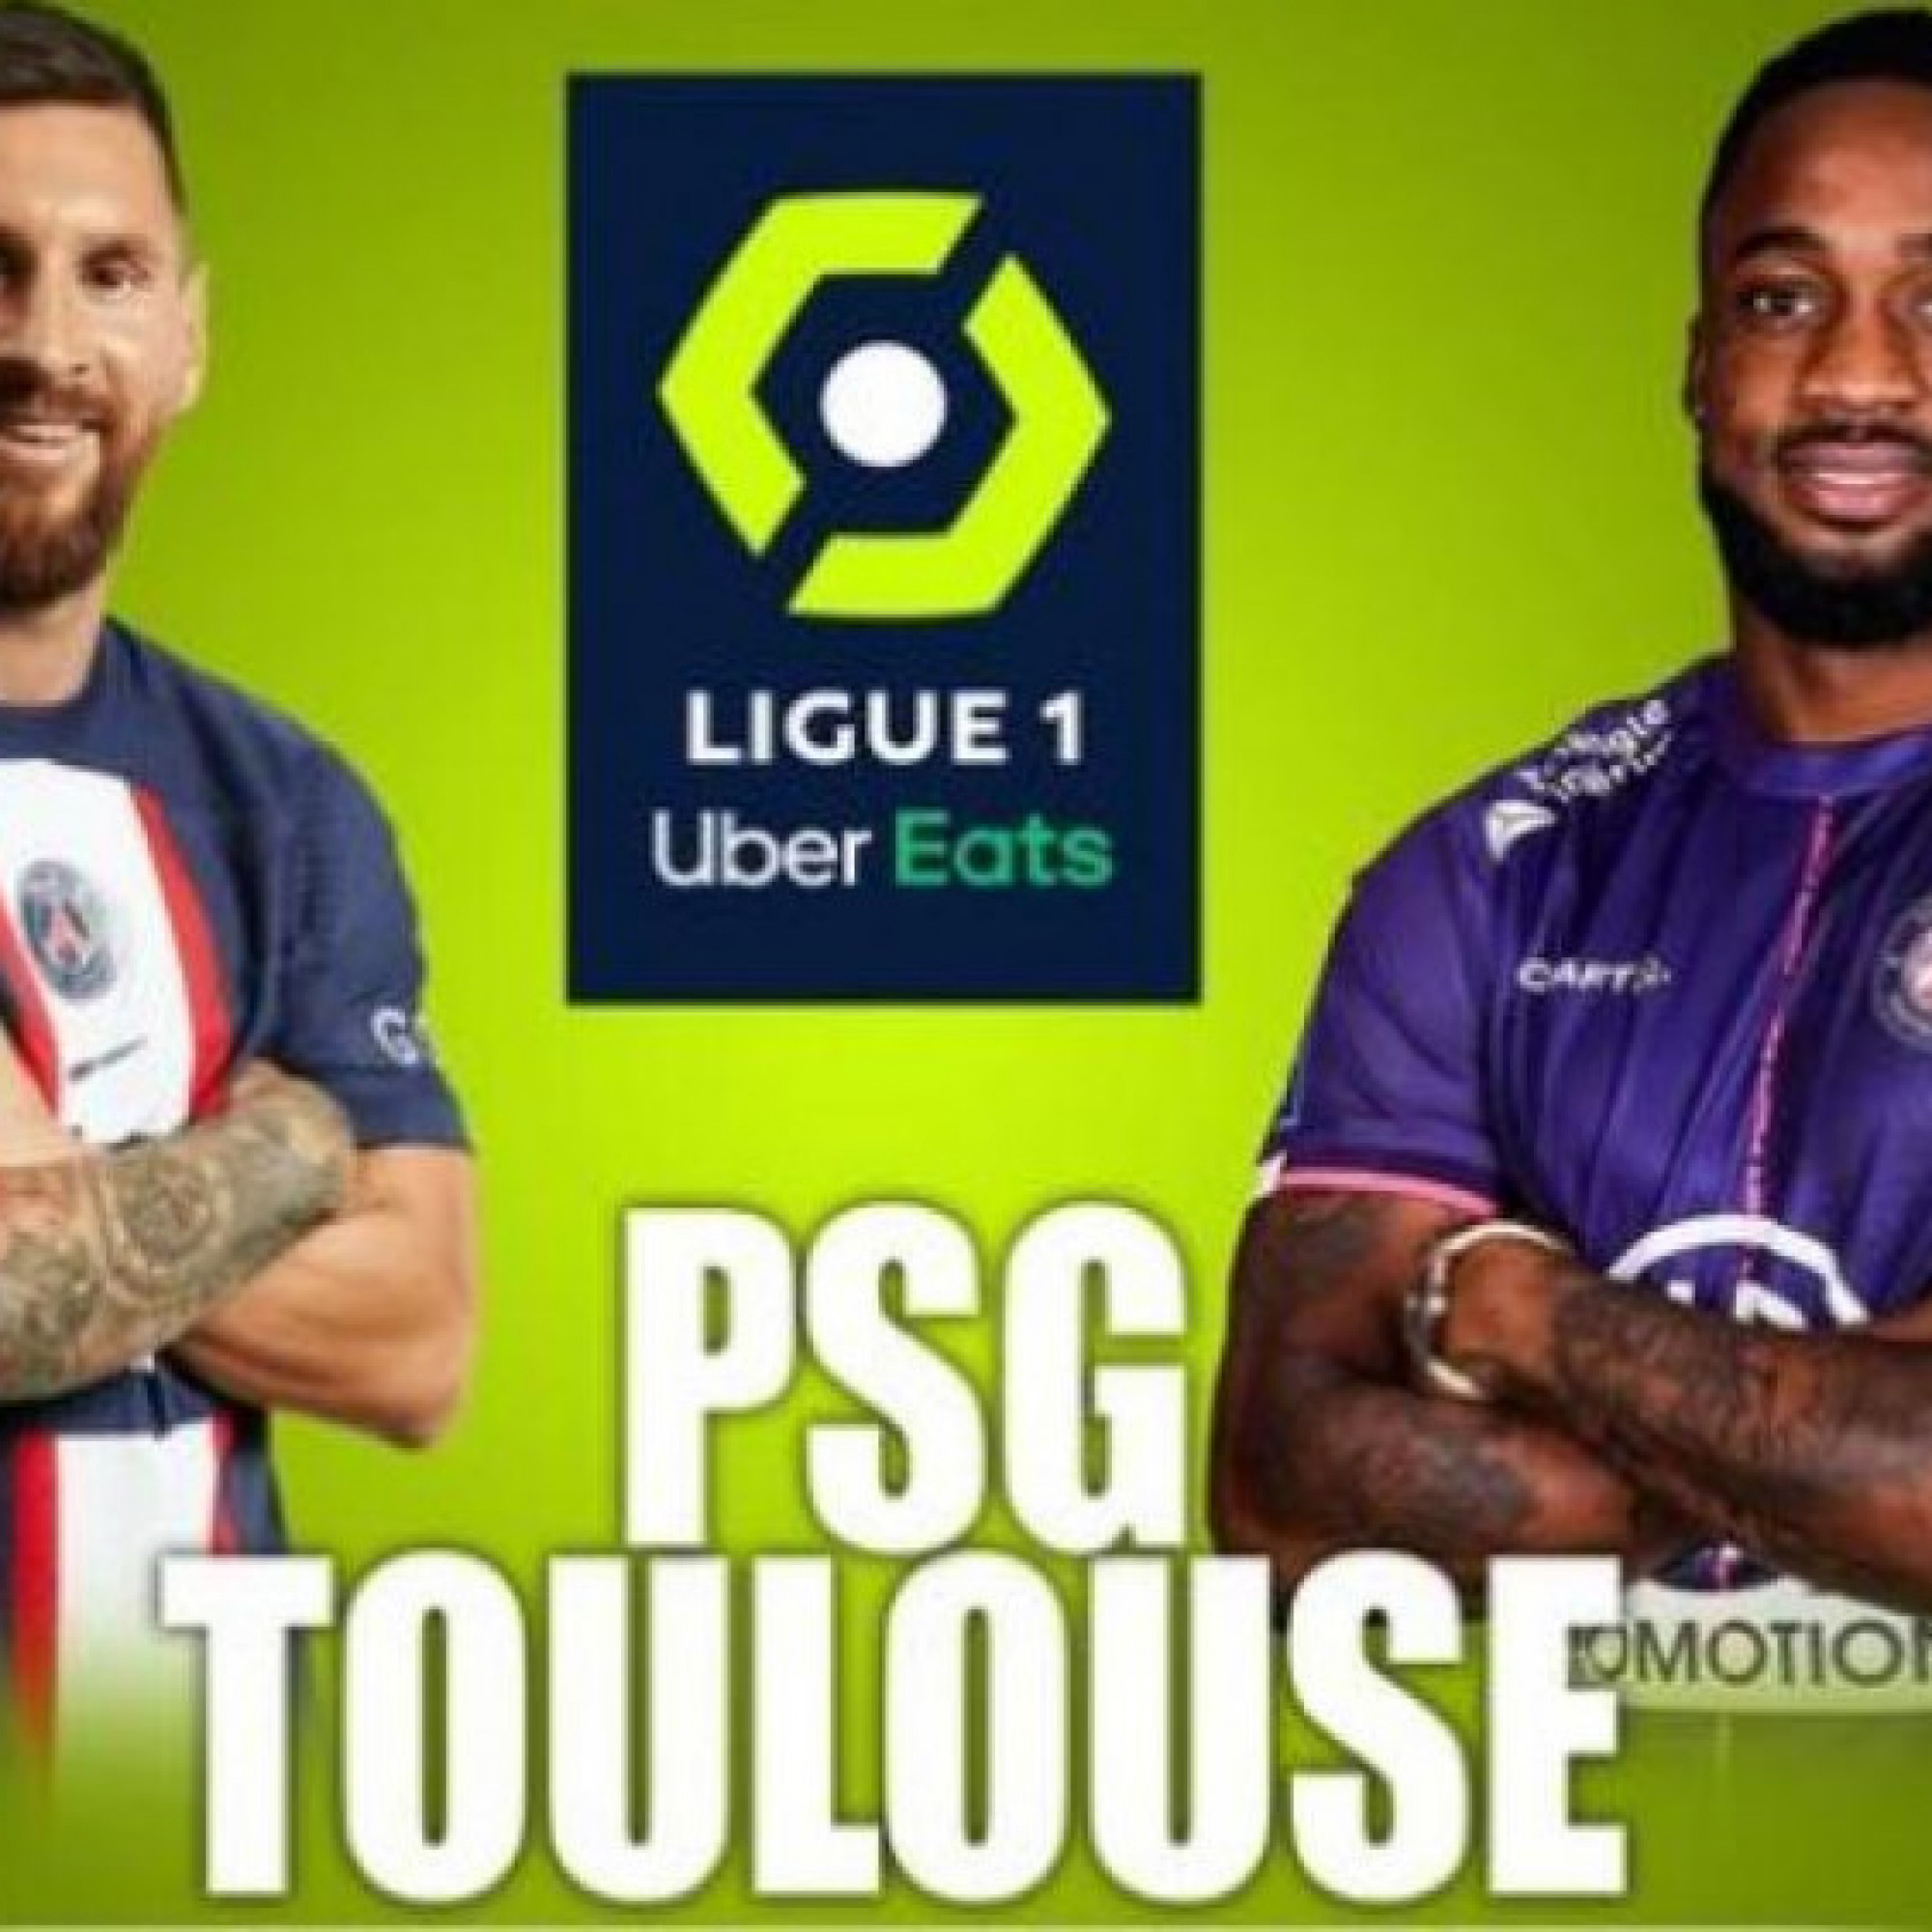  - Trực tiếp bóng đá PSG - Toulouse: Bàn mở tỷ số đầy bất ngờ (Ligue 1)